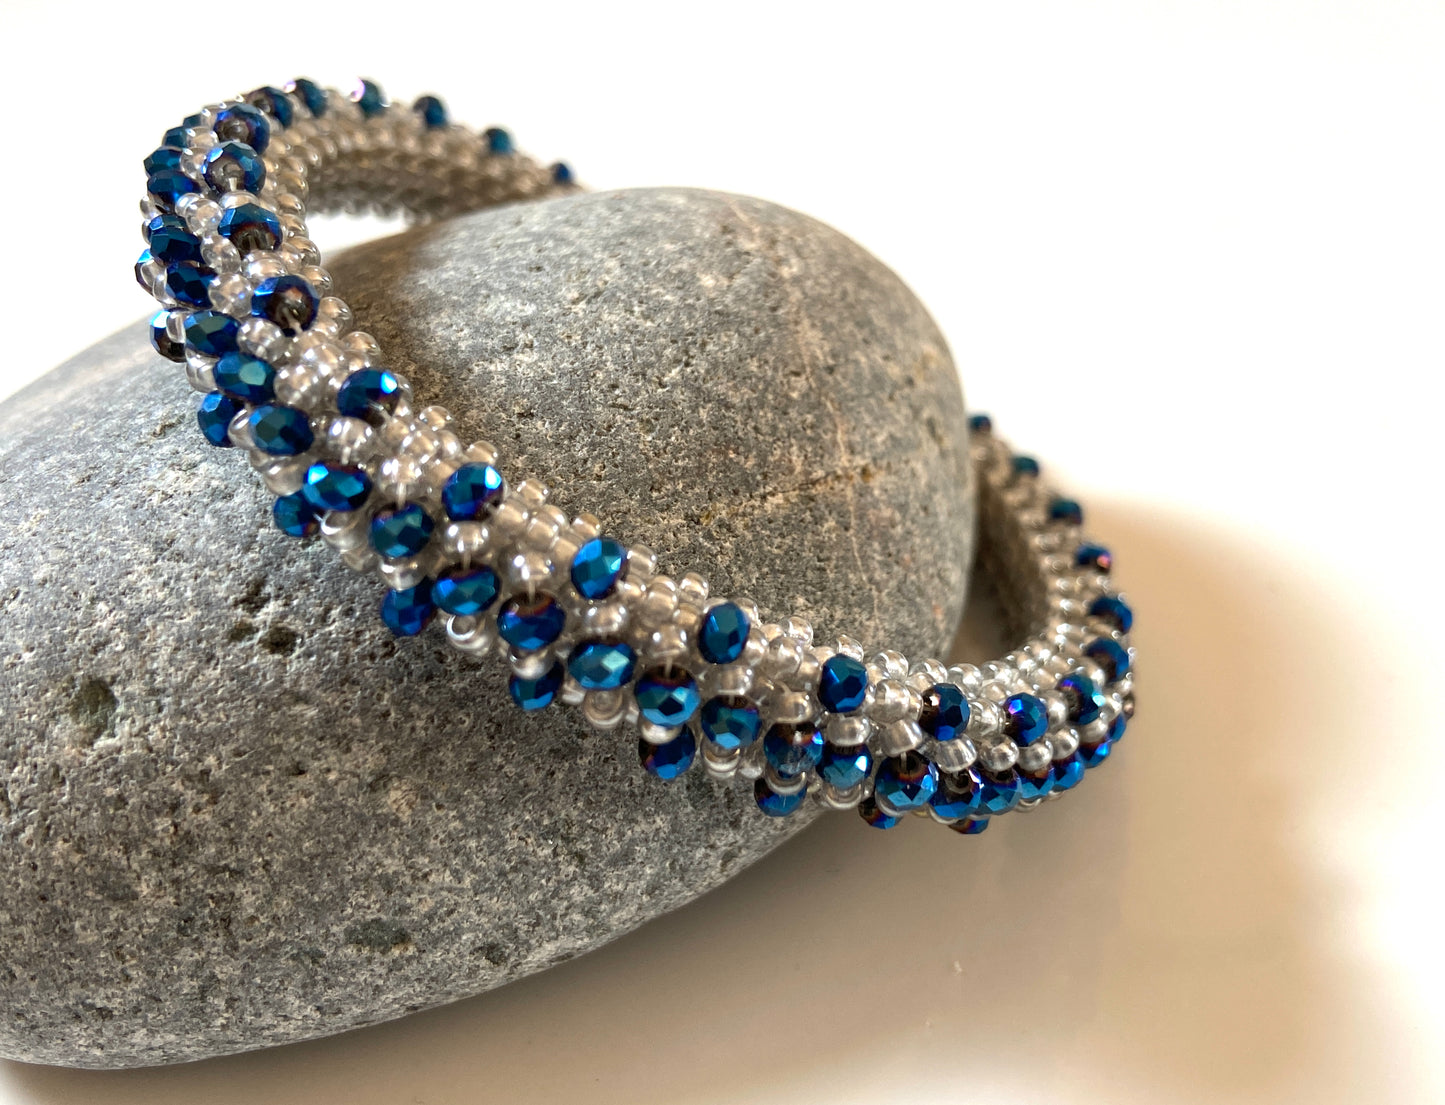 Crystal Asteroid field bracelet